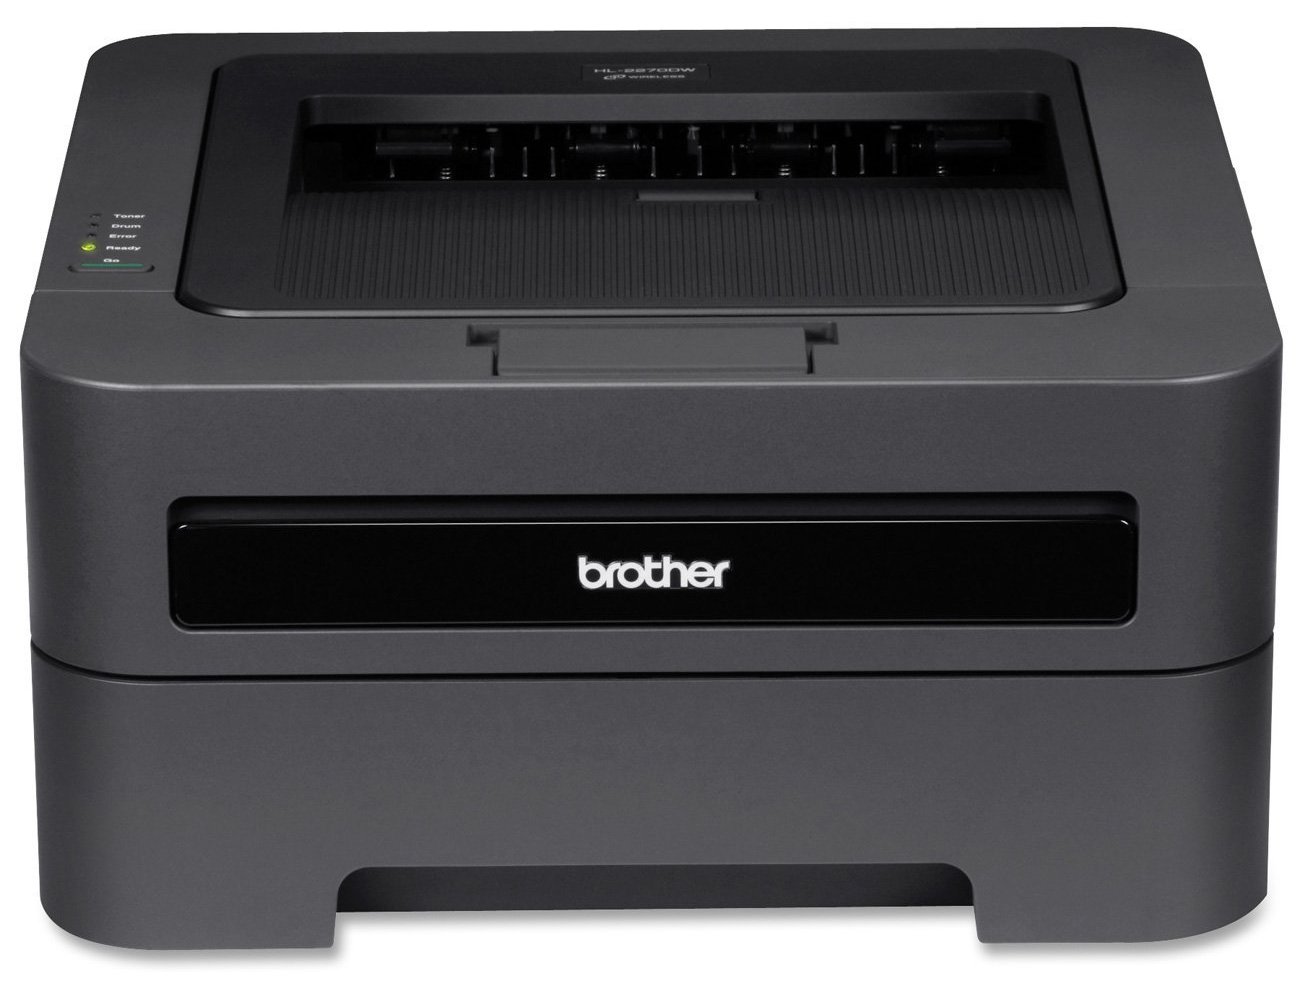 Brother HL-2270DW | Brother HL-2270DW Laser Printer